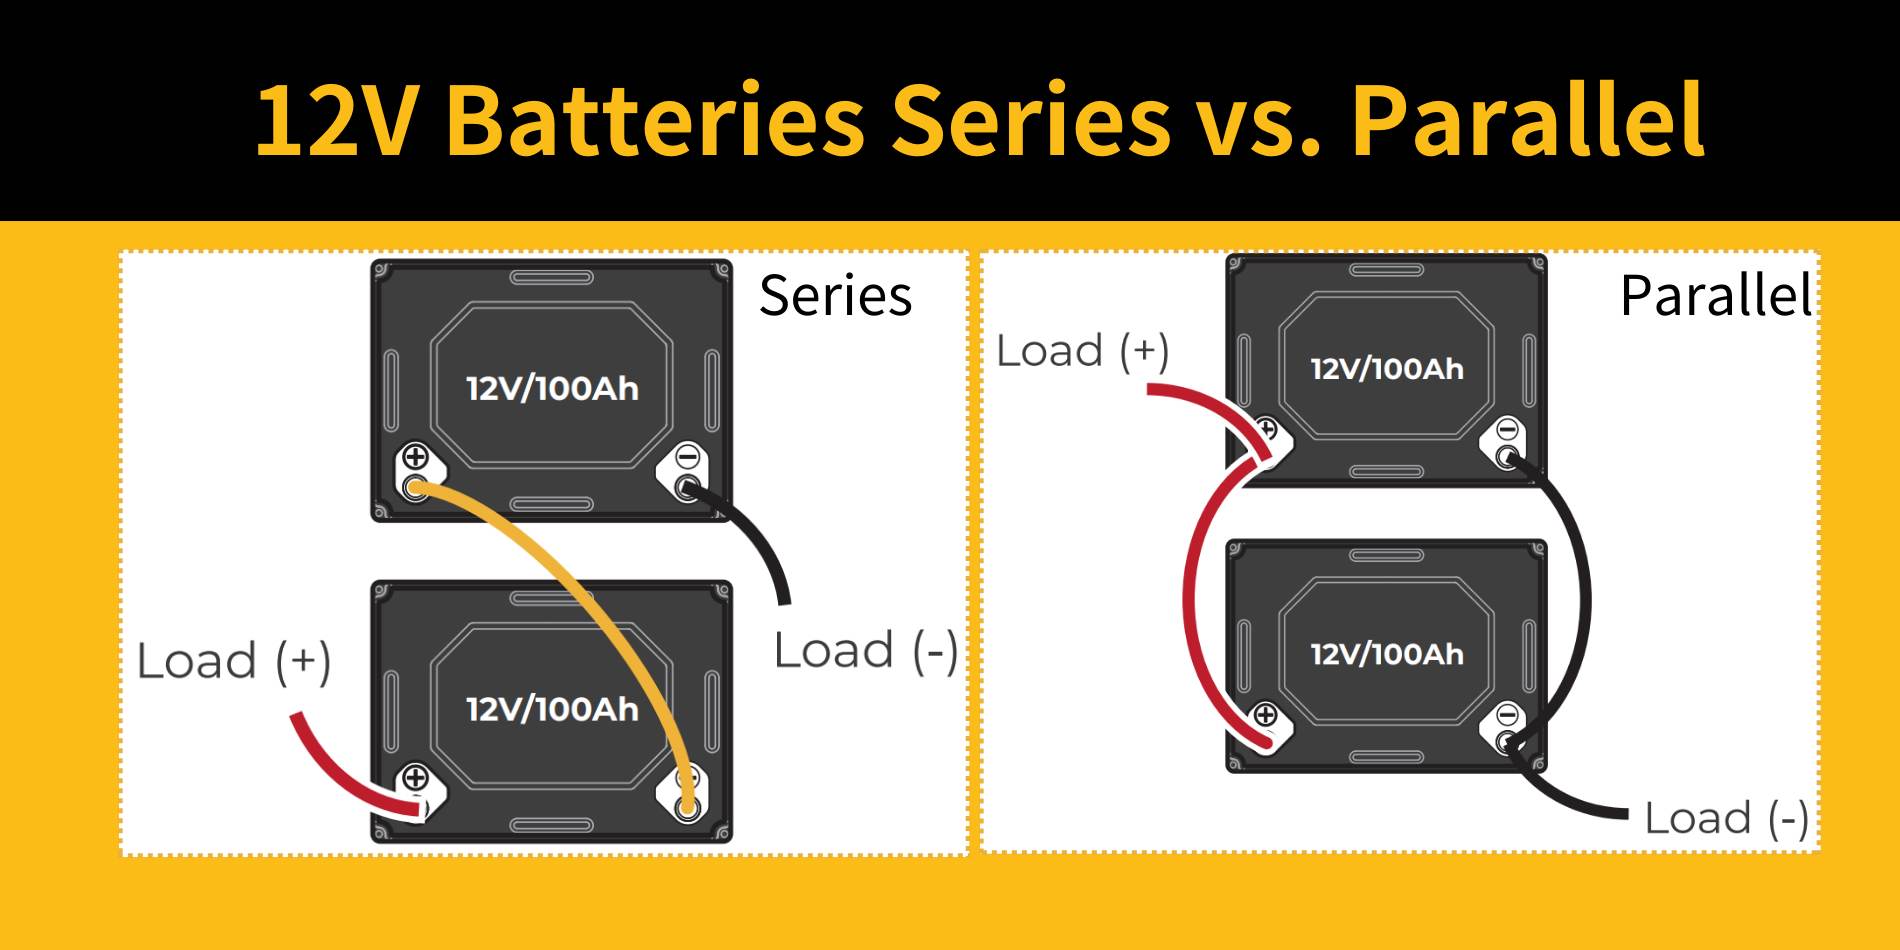 12V batteries series vs. Parallel